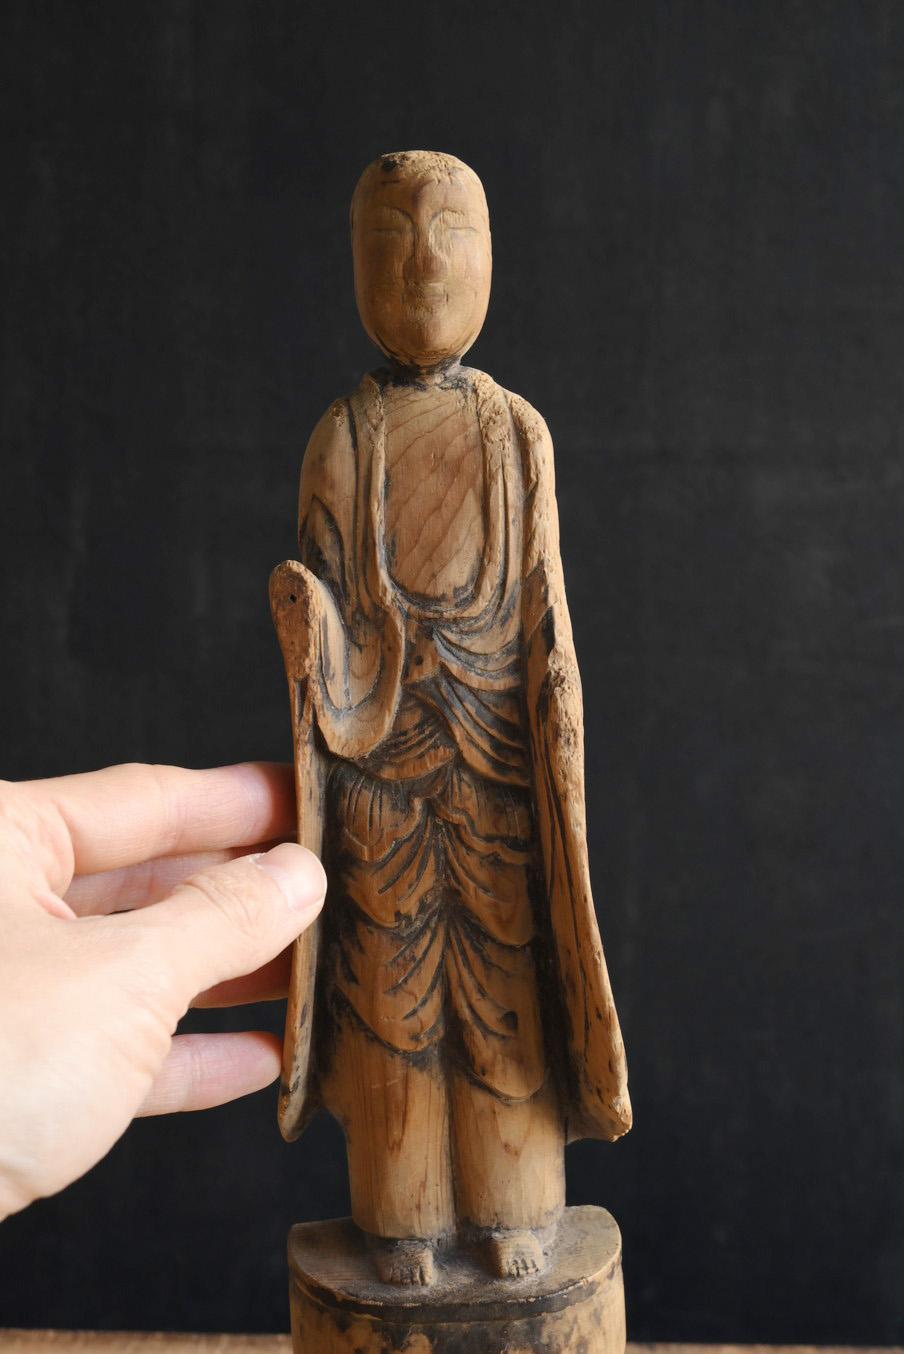 Il s'agit d'une ancienne statue bouddhiste japonaise datant de la période Edo.
Le matériau serait du cyprès ou du cèdre.
Le piédestal carré en bas a été ajouté plus tard.
La divinité de cette statue de Bouddha est le bodhisattva Jizo.
Cette statue